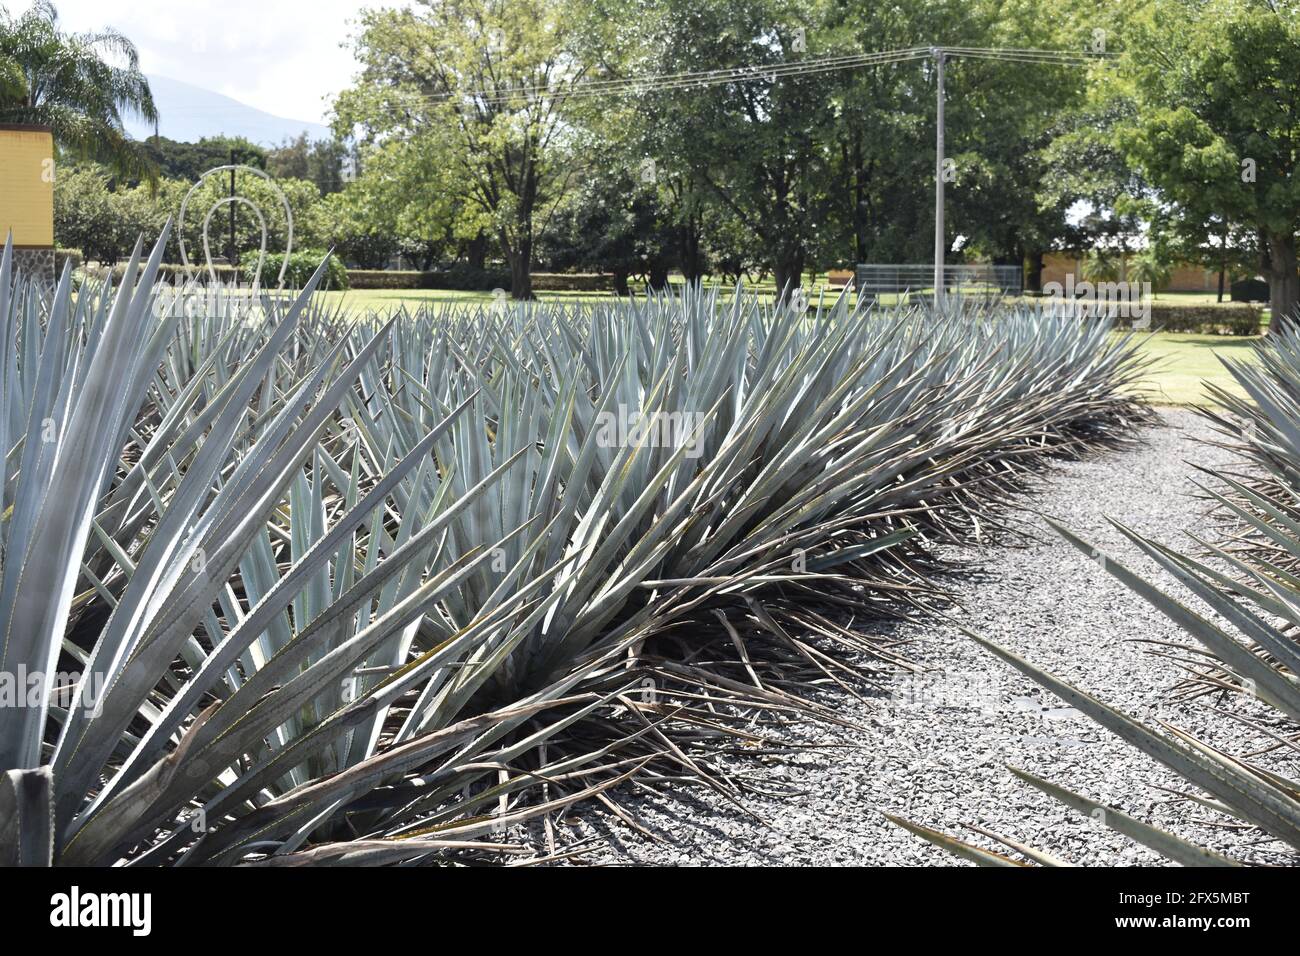 Plantio de agave para tequila, Jalisco, México Stock Photo